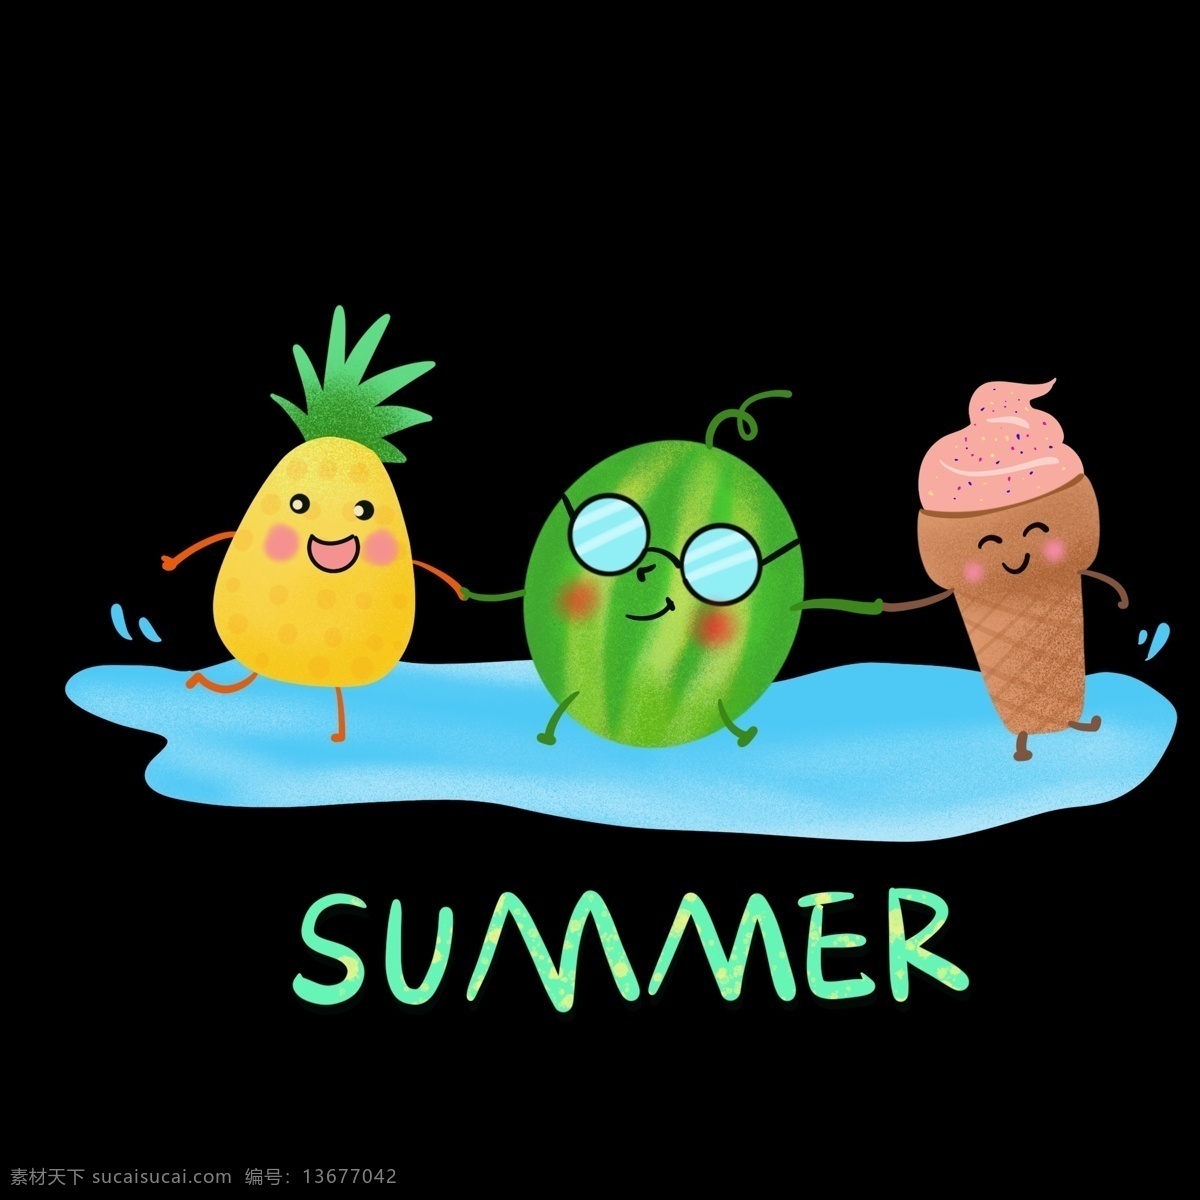 夏季 水果 手绘 免 抠 图 手绘可爱水果 菠萝手绘 西瓜 季节 海报 装饰设计 清凉夏日